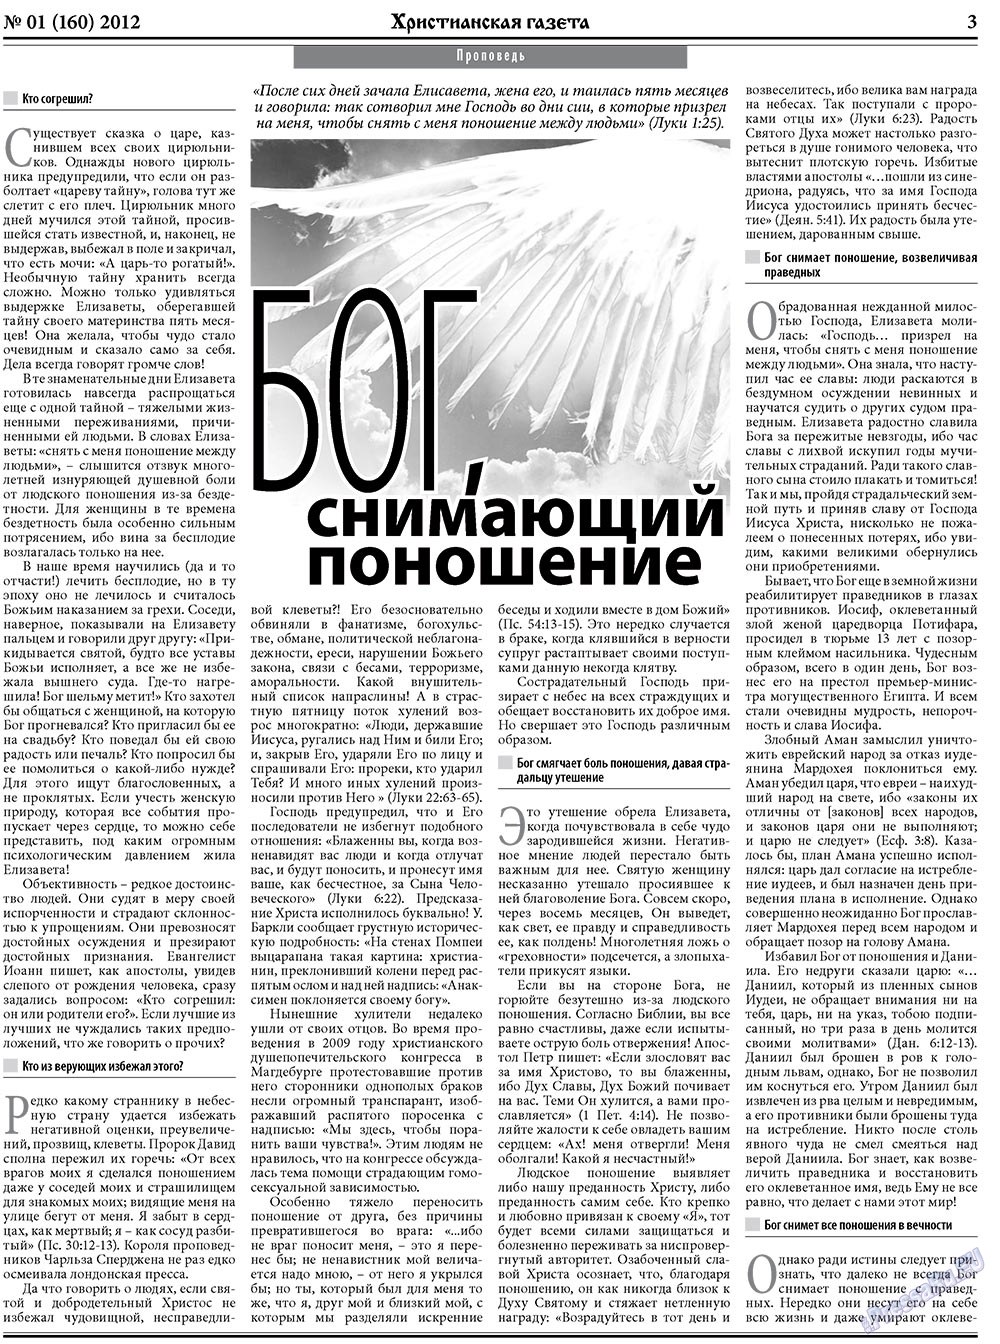 Христианская газета (газета). 2012 год, номер 1, стр. 3